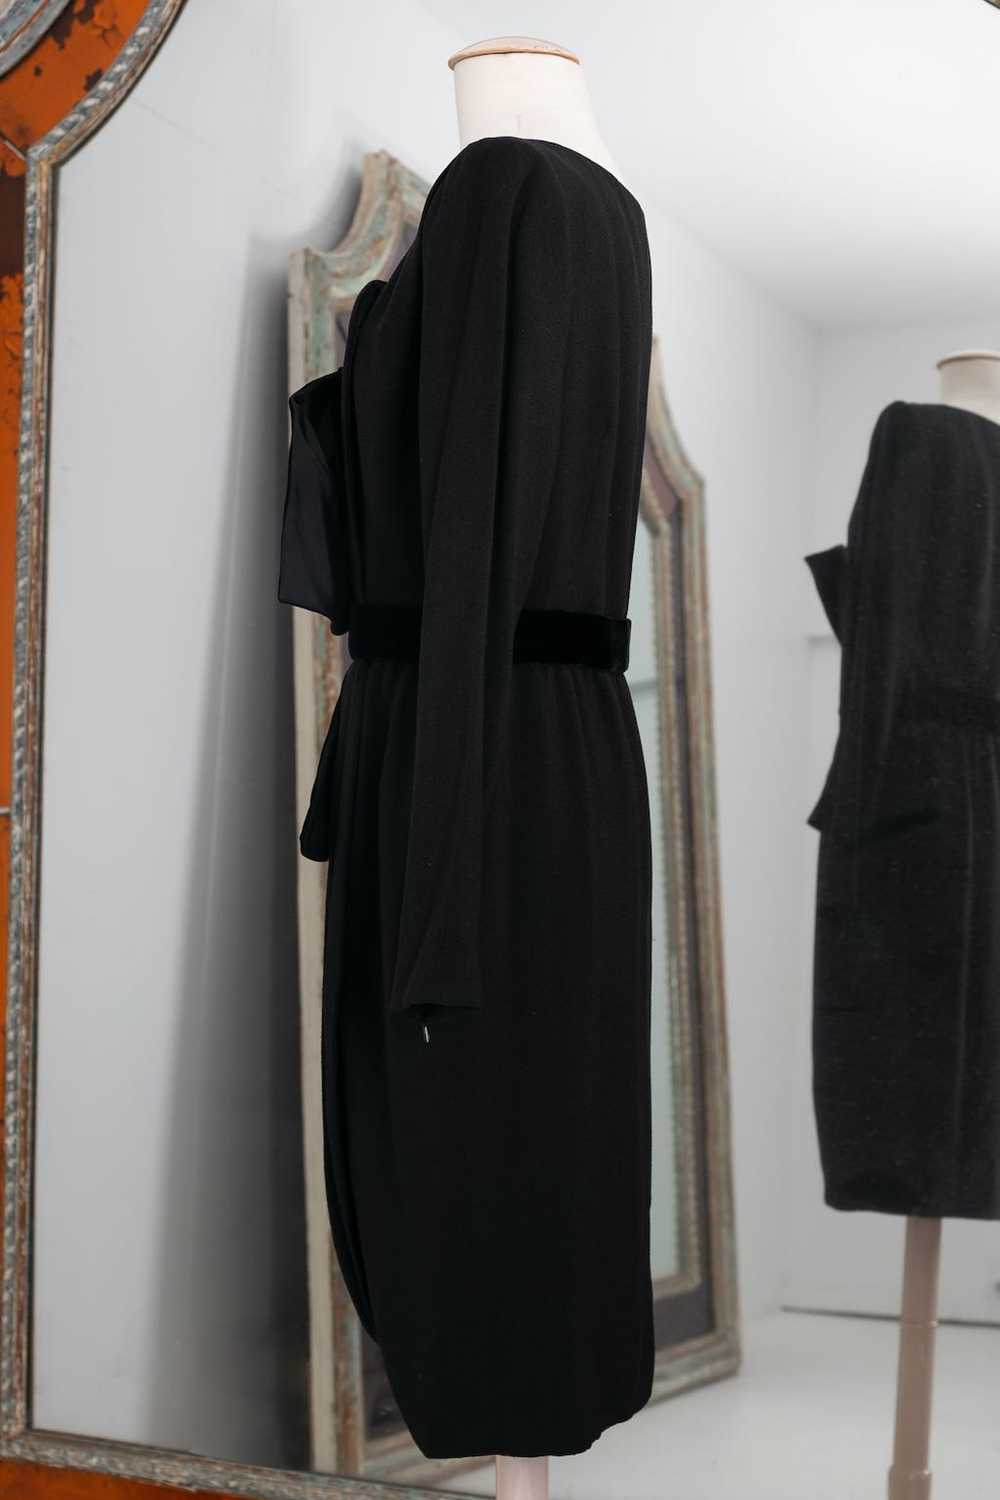 Yves saint Laurent Haute Couture black dress - image 2